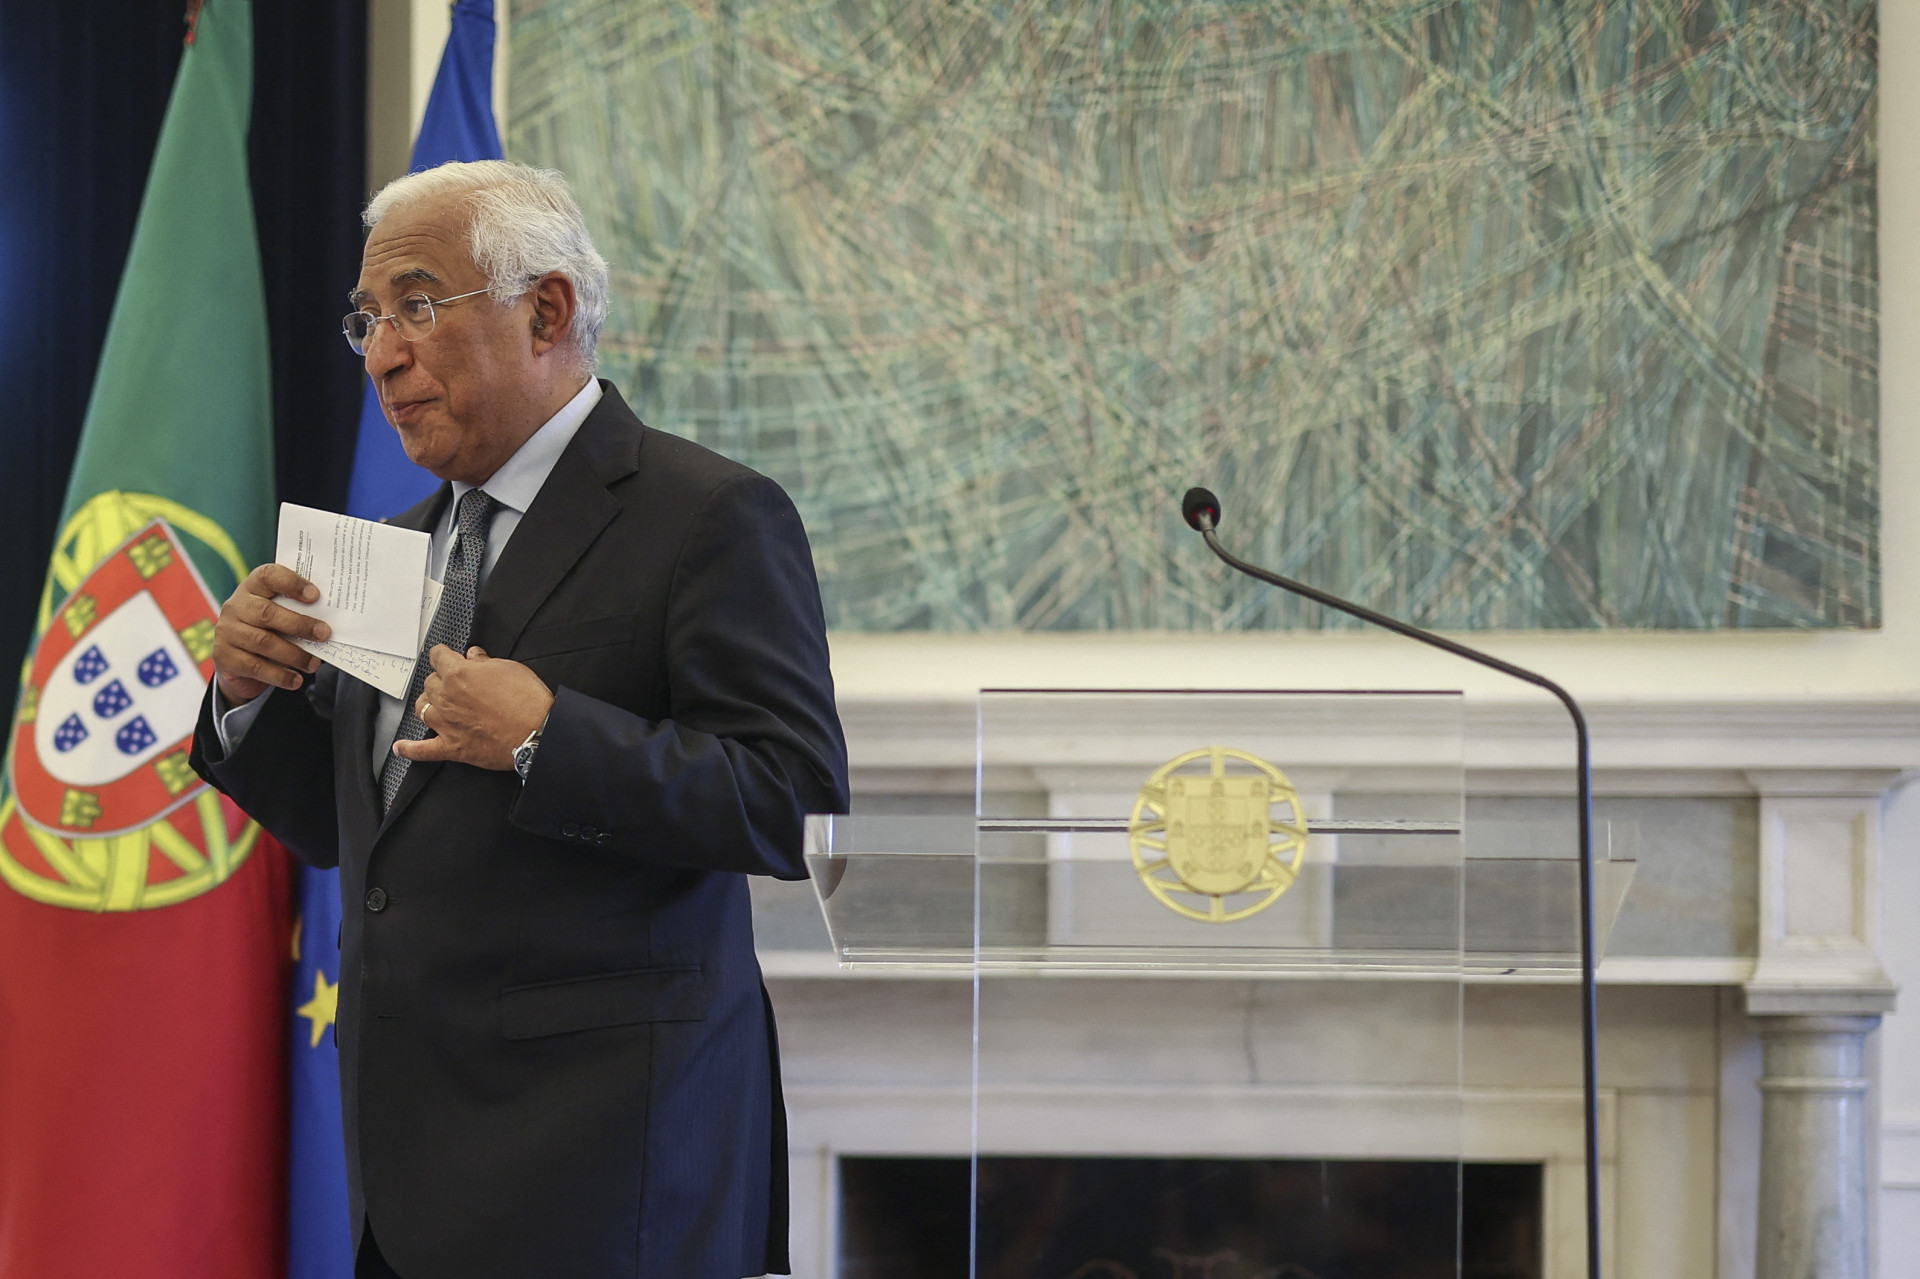 Primeiro Ministro De Portugal Renuncia Em Meio A Escândalo De Corrupção Farol Opovo 3980